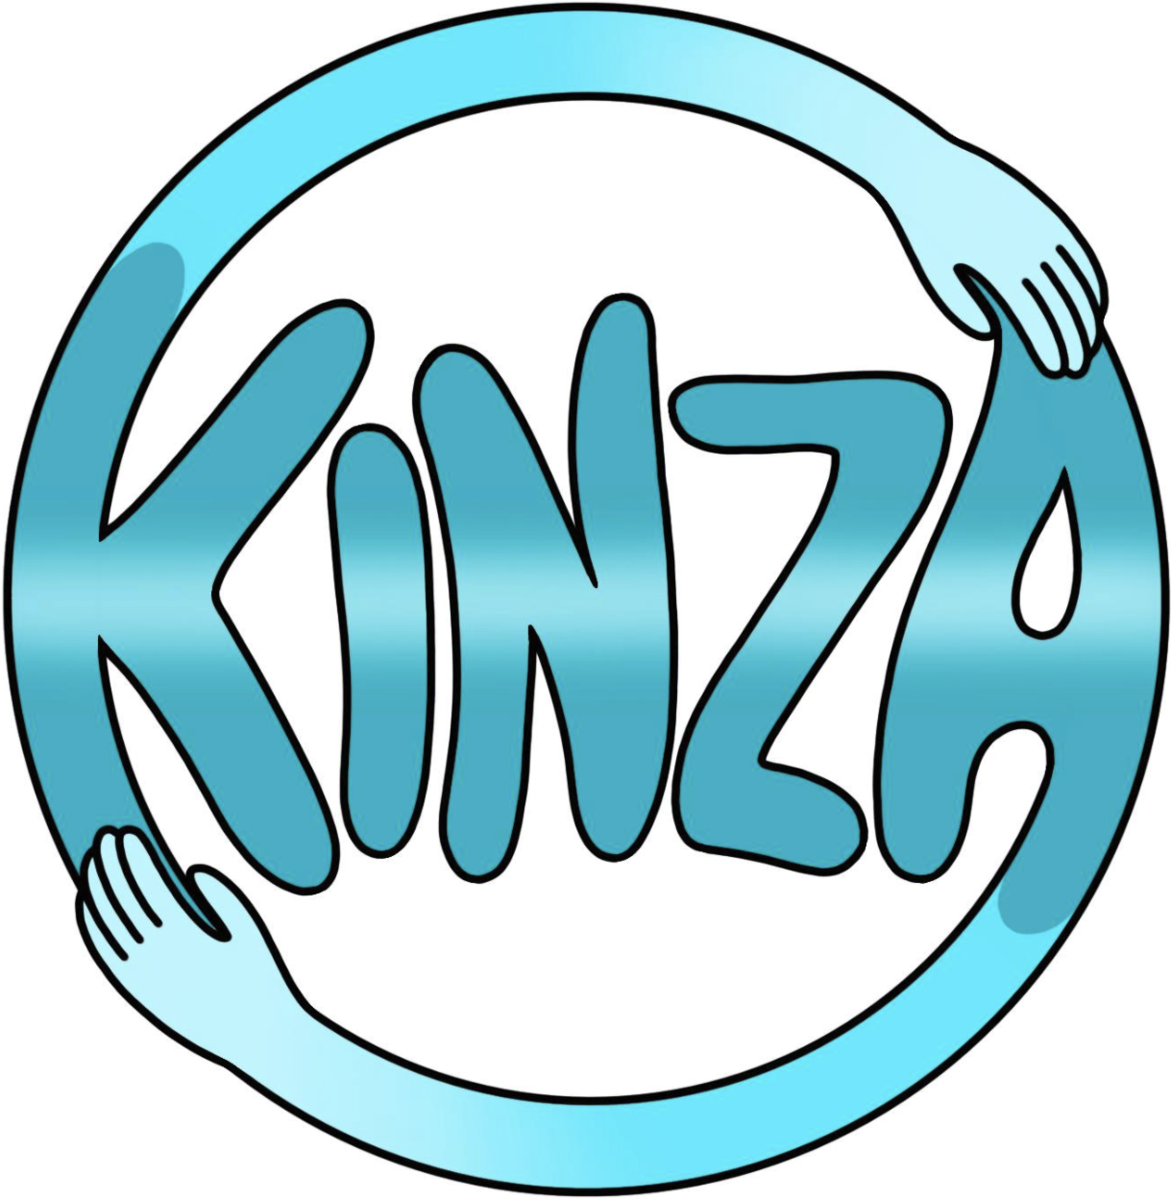 Kinza Who are Kinza?